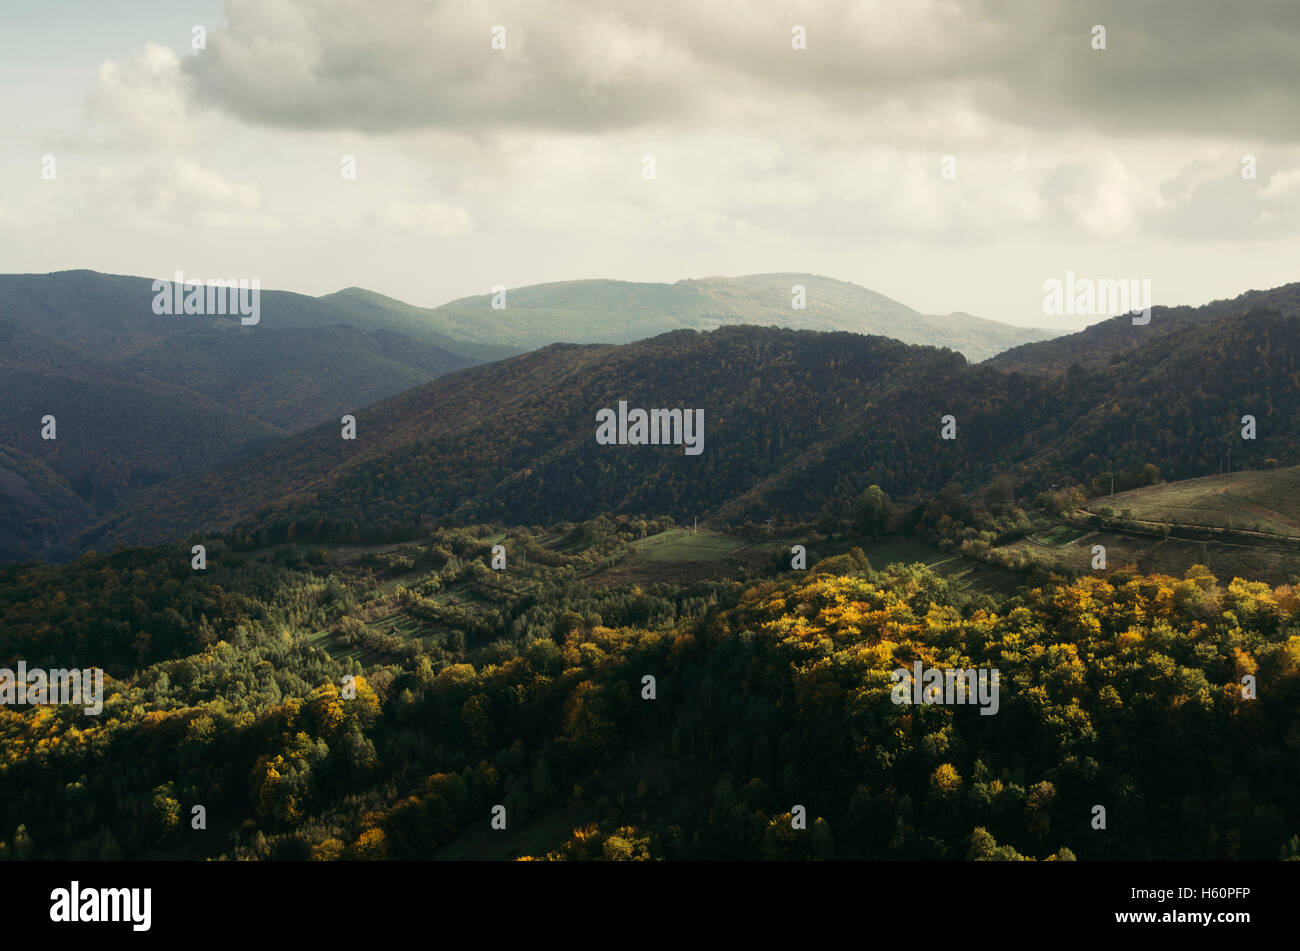 Natur-Landschaft. Landschaft mit Bergen, Hügeln, bunten Herbstwald und Wolken am Himmel abends in einem entfernten Naturschutzgebiet Stockfoto